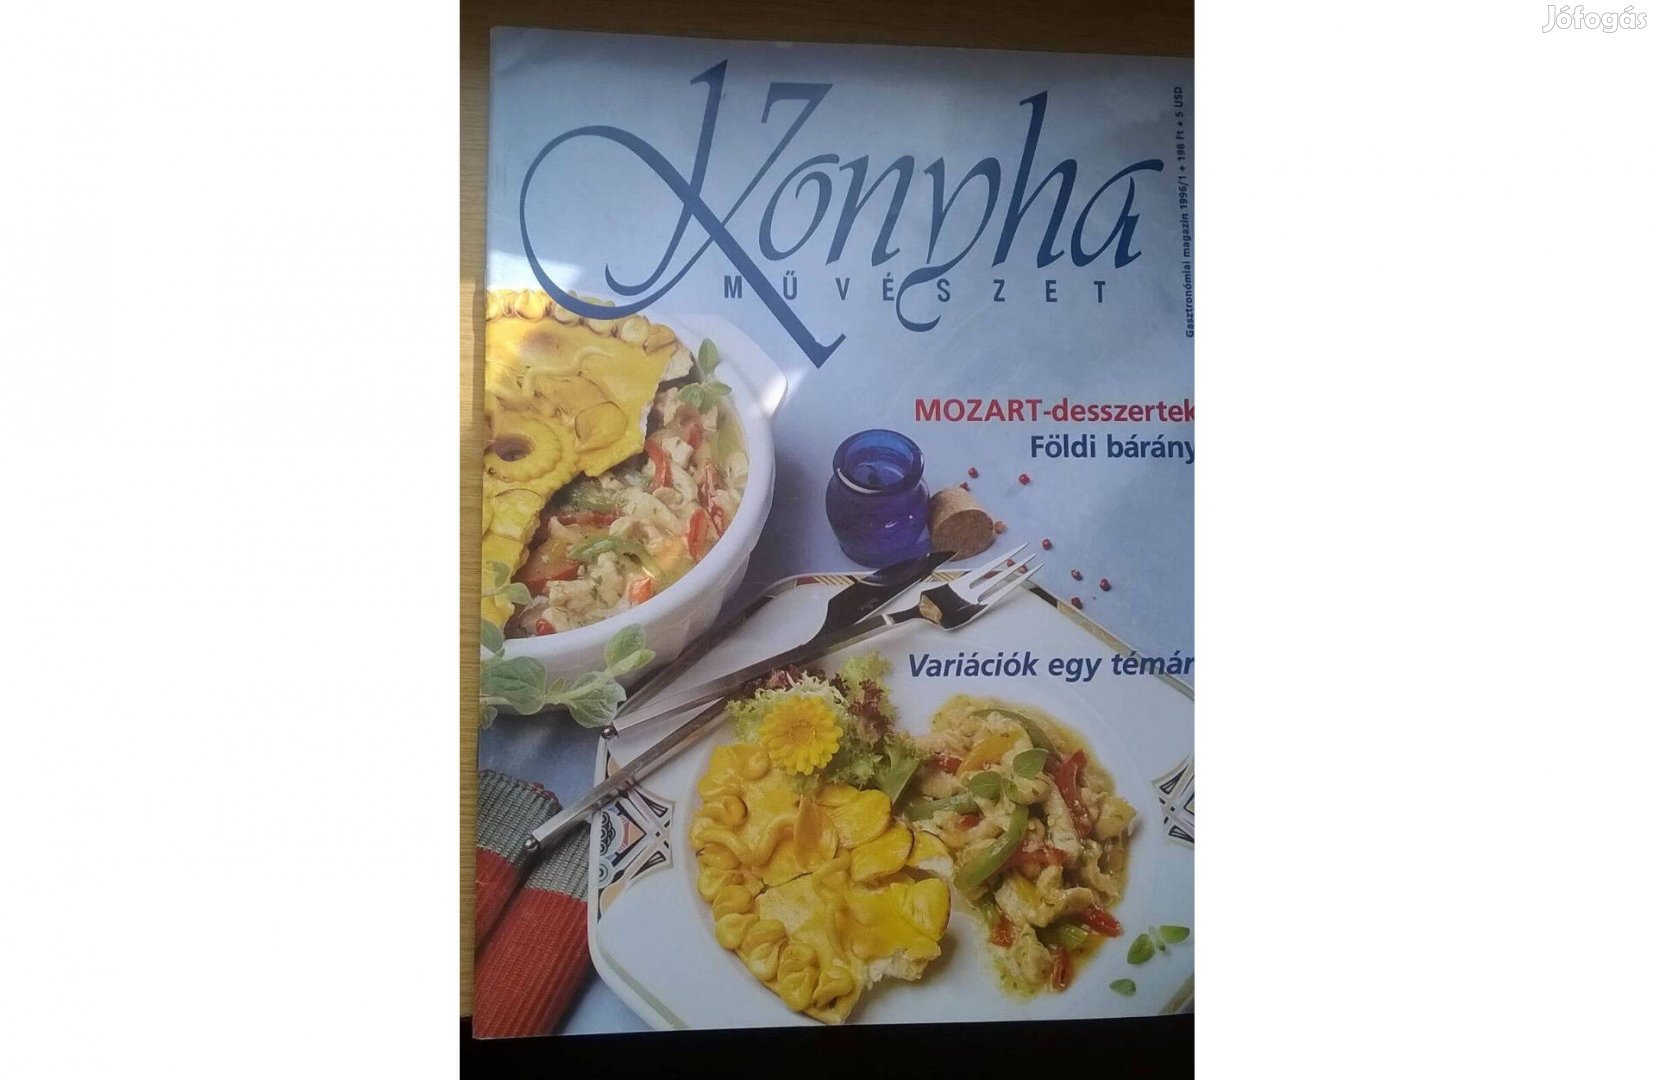 Konyhaművészet gasztronómiai magazinok, 1996-ból